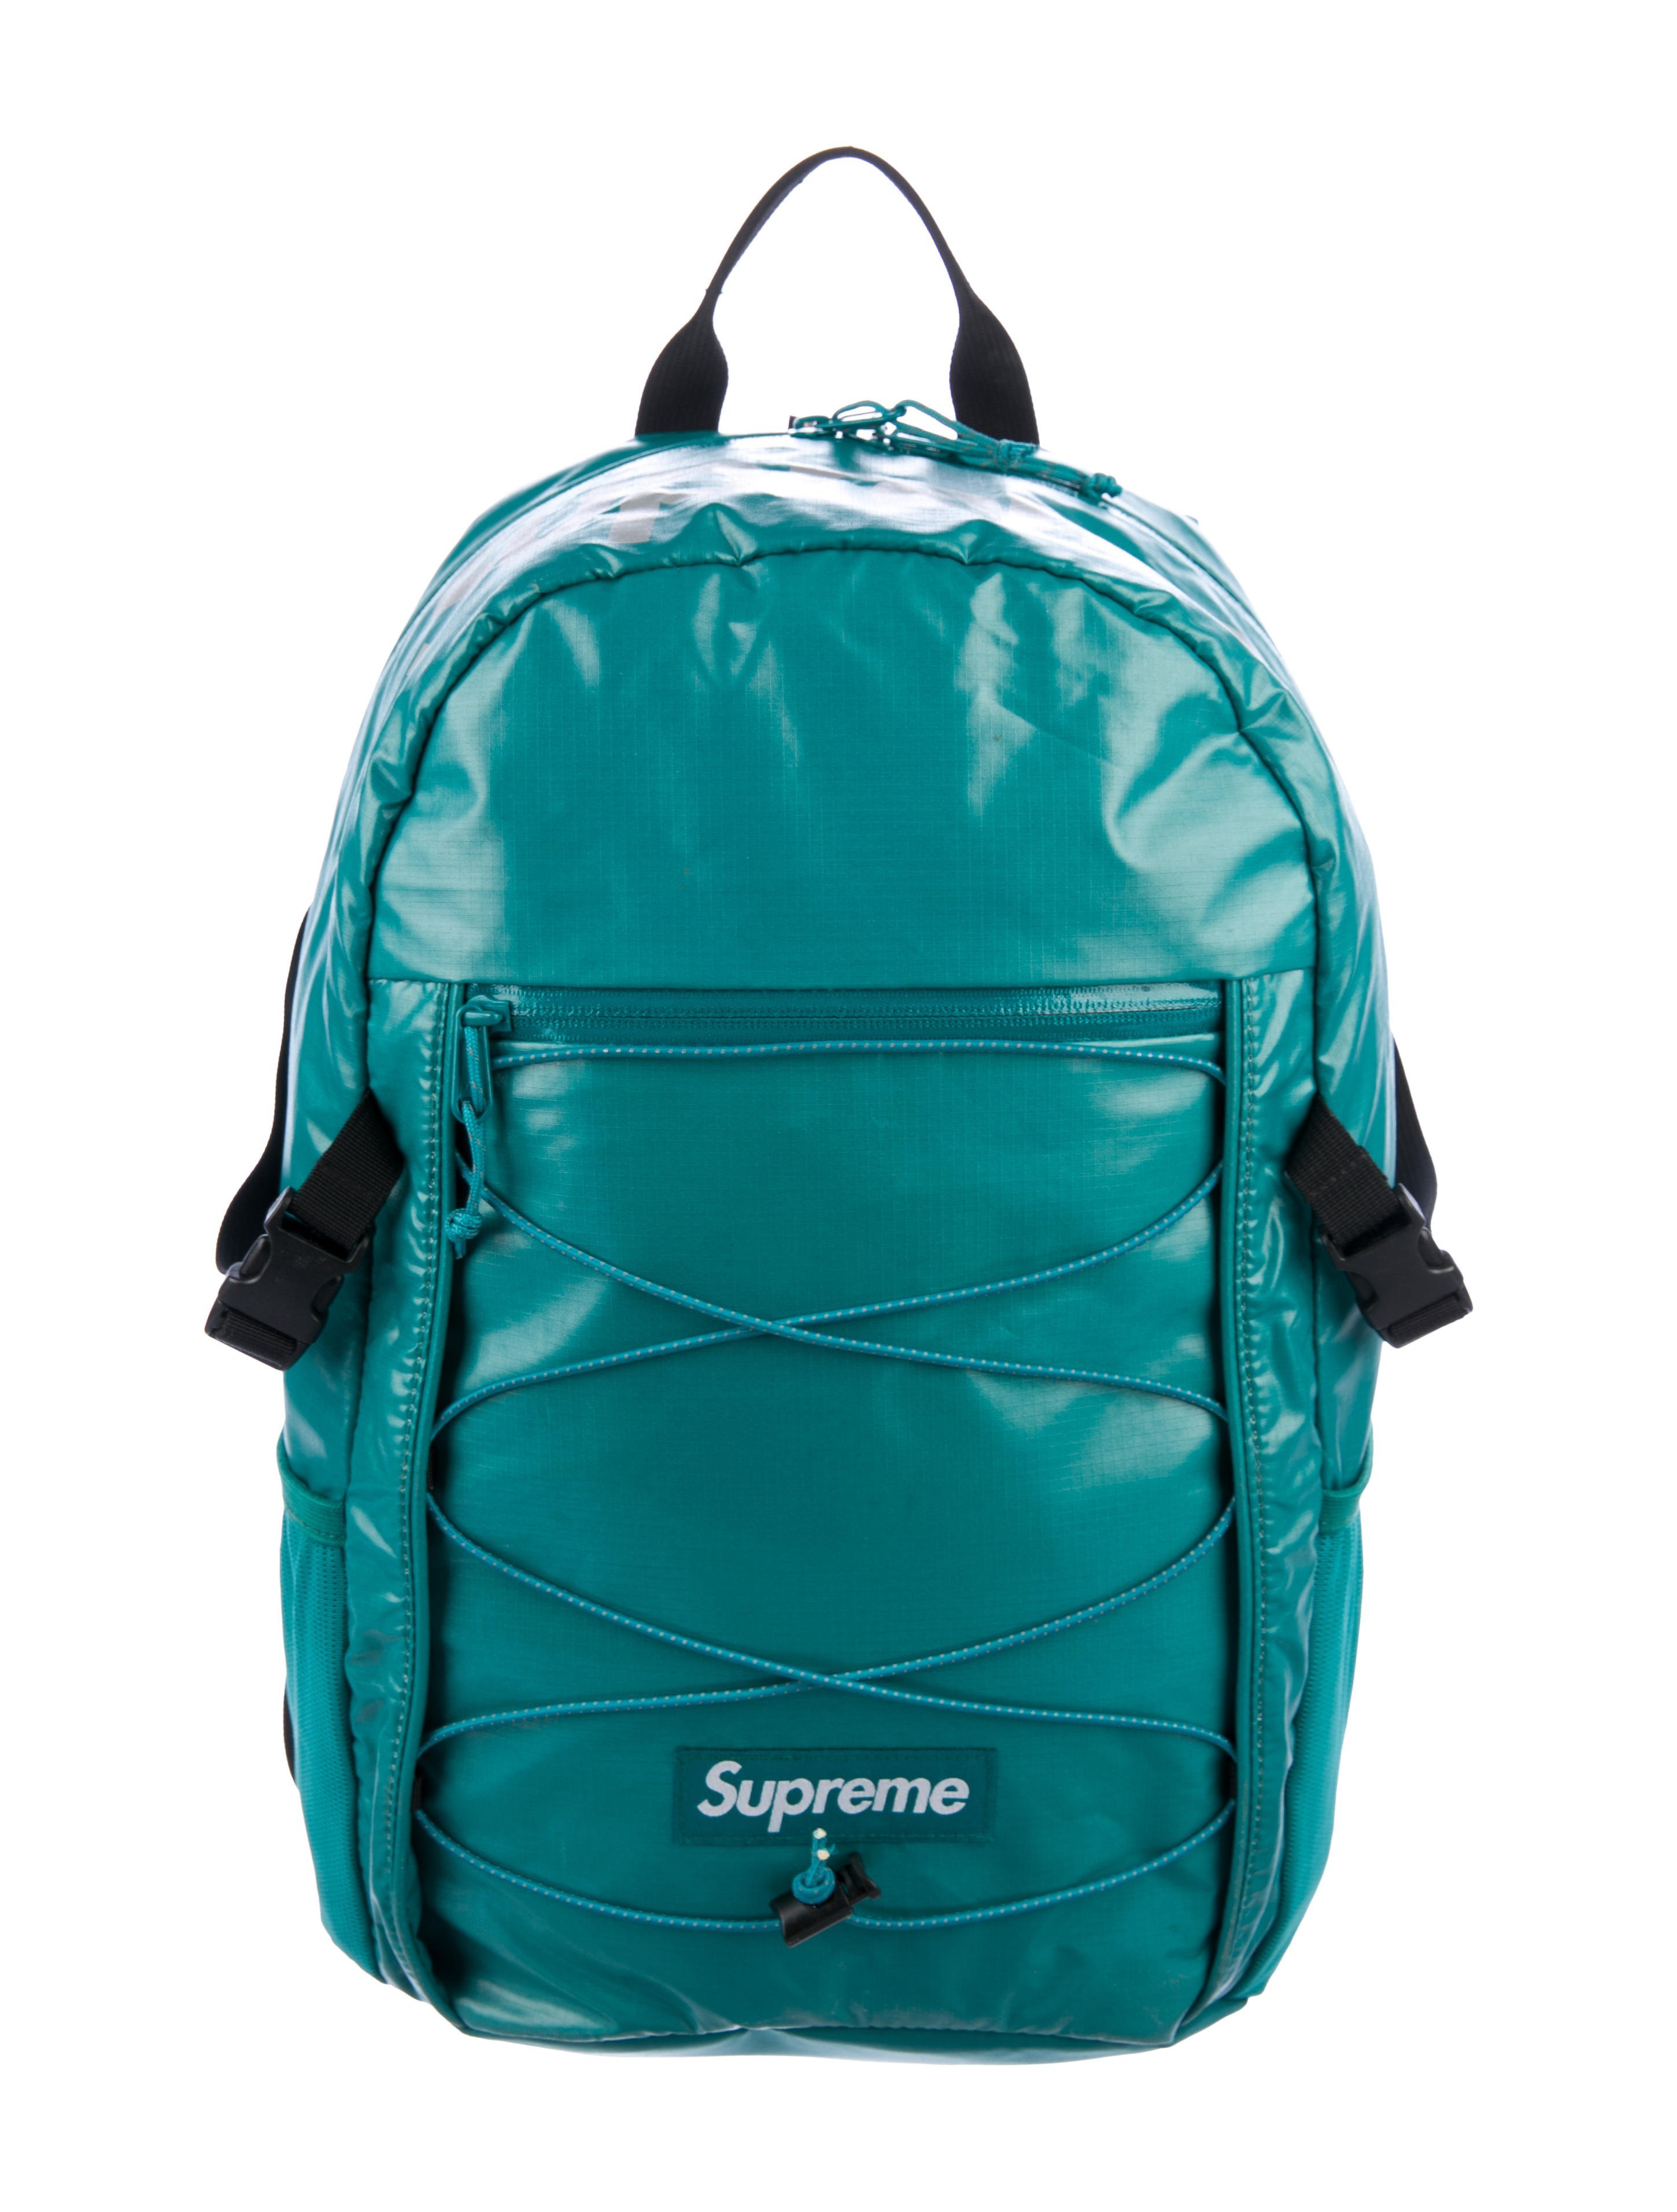 Green Supreme Backpack Flash Sales, SAVE 43% - puhlskitchen.com